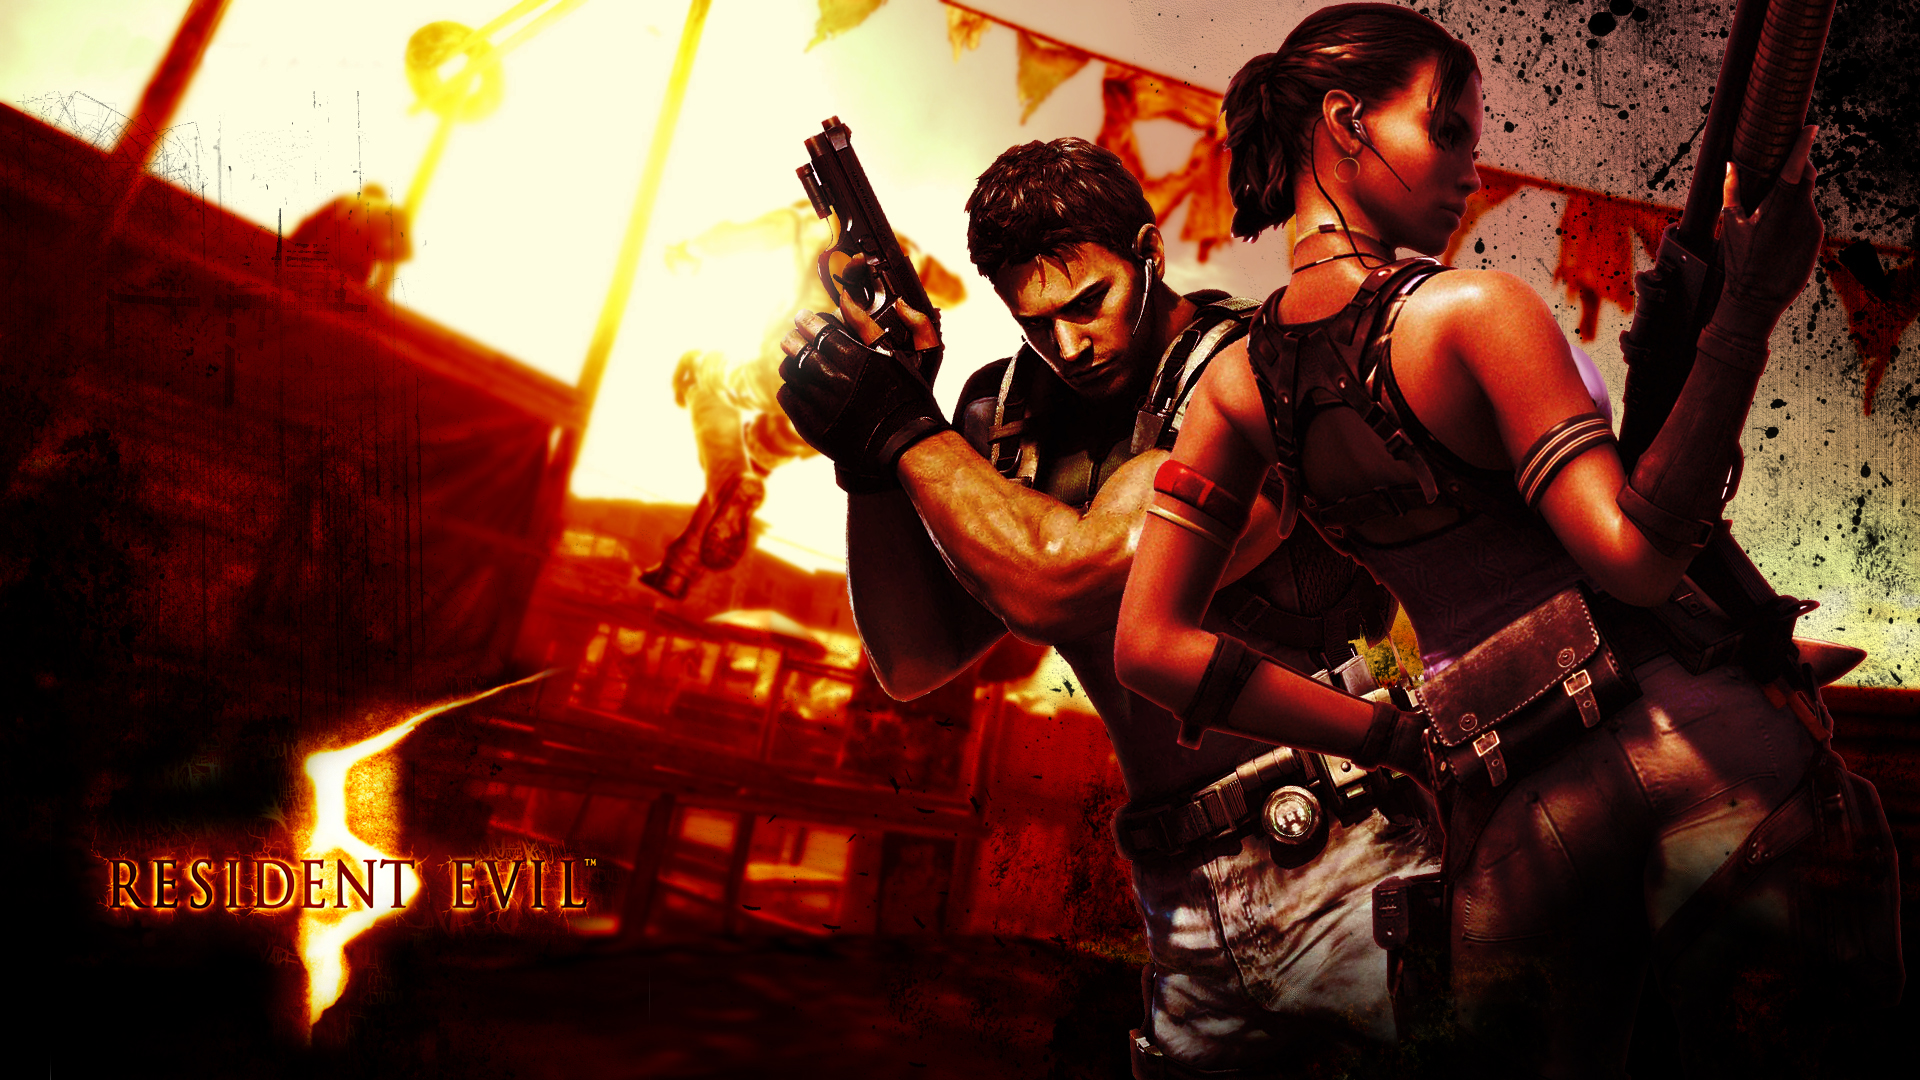 video games, Resident Evil, Chris Redfield, Sheva Alomar - desktop wallpaper